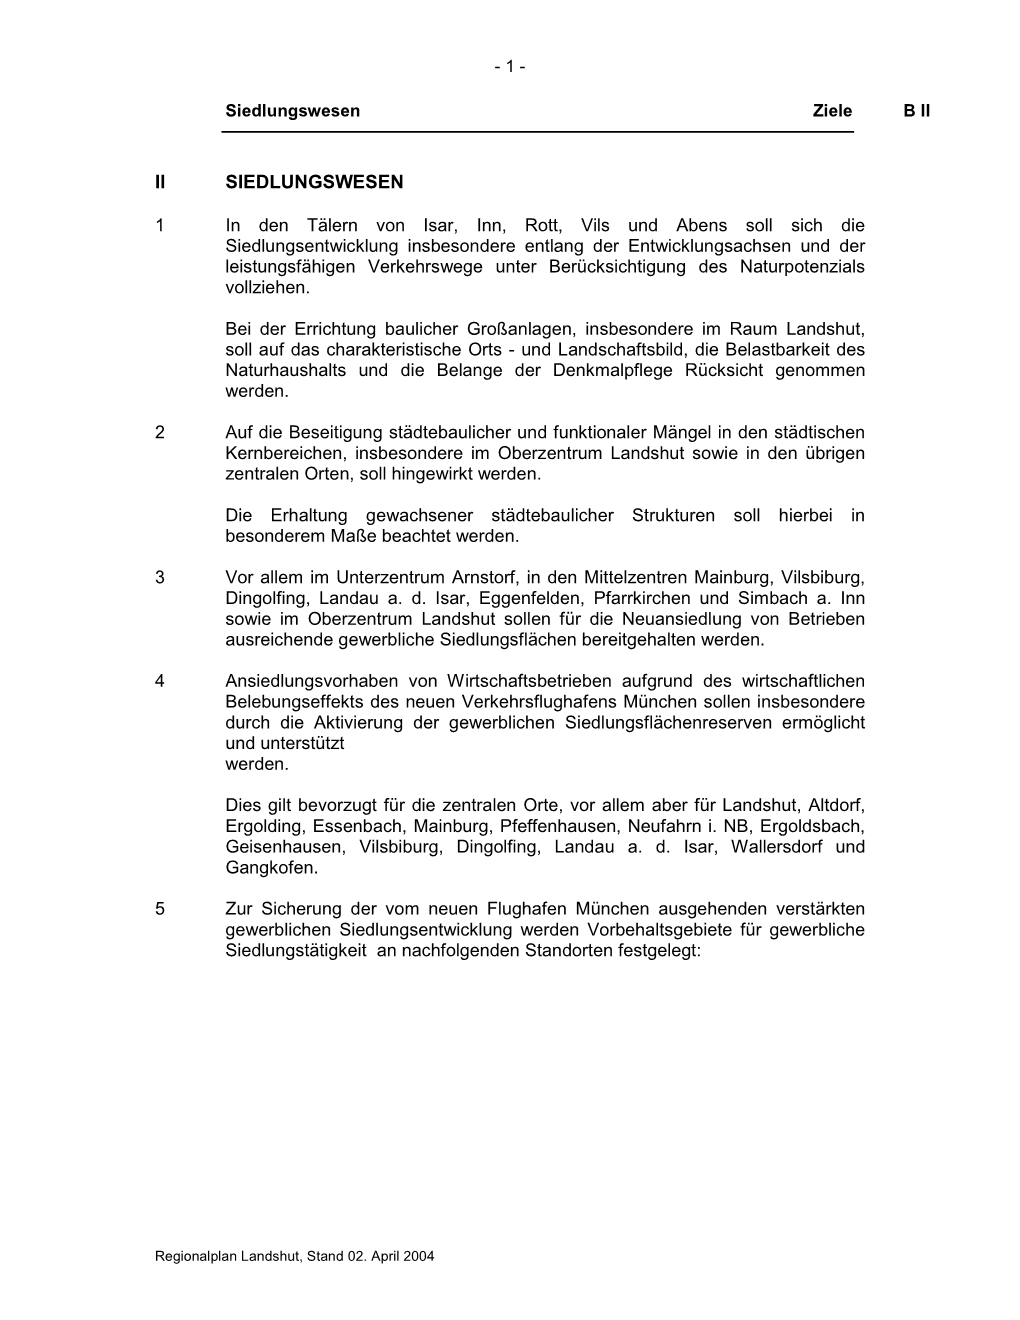 PDF-Version Des Kapitels B II Siedlungswesen (Ziele Und